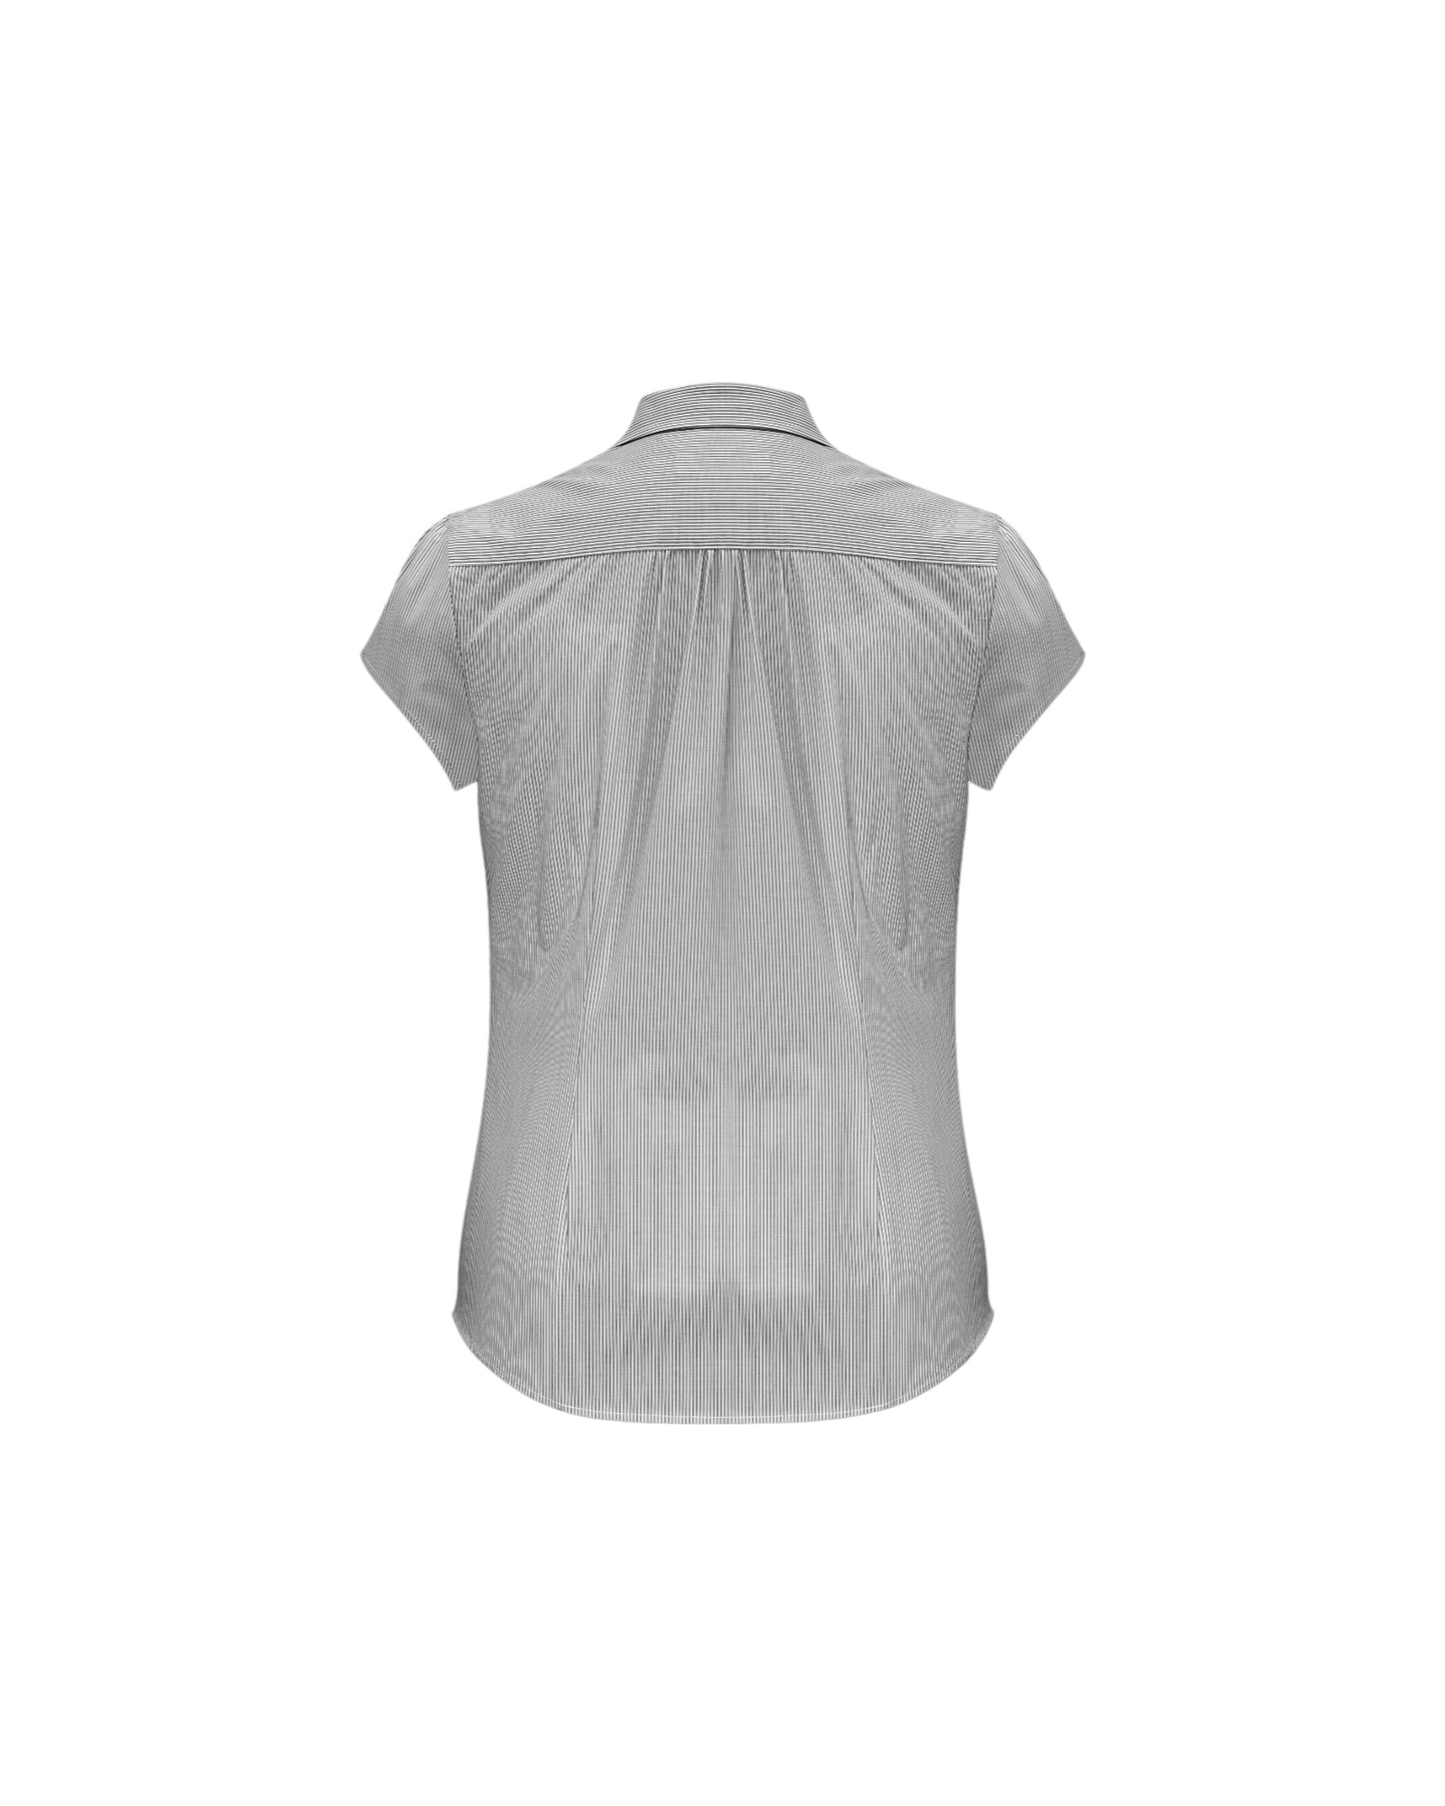 Chemise à manches courtes Euro pour femmes Fashion Biz #S812LS